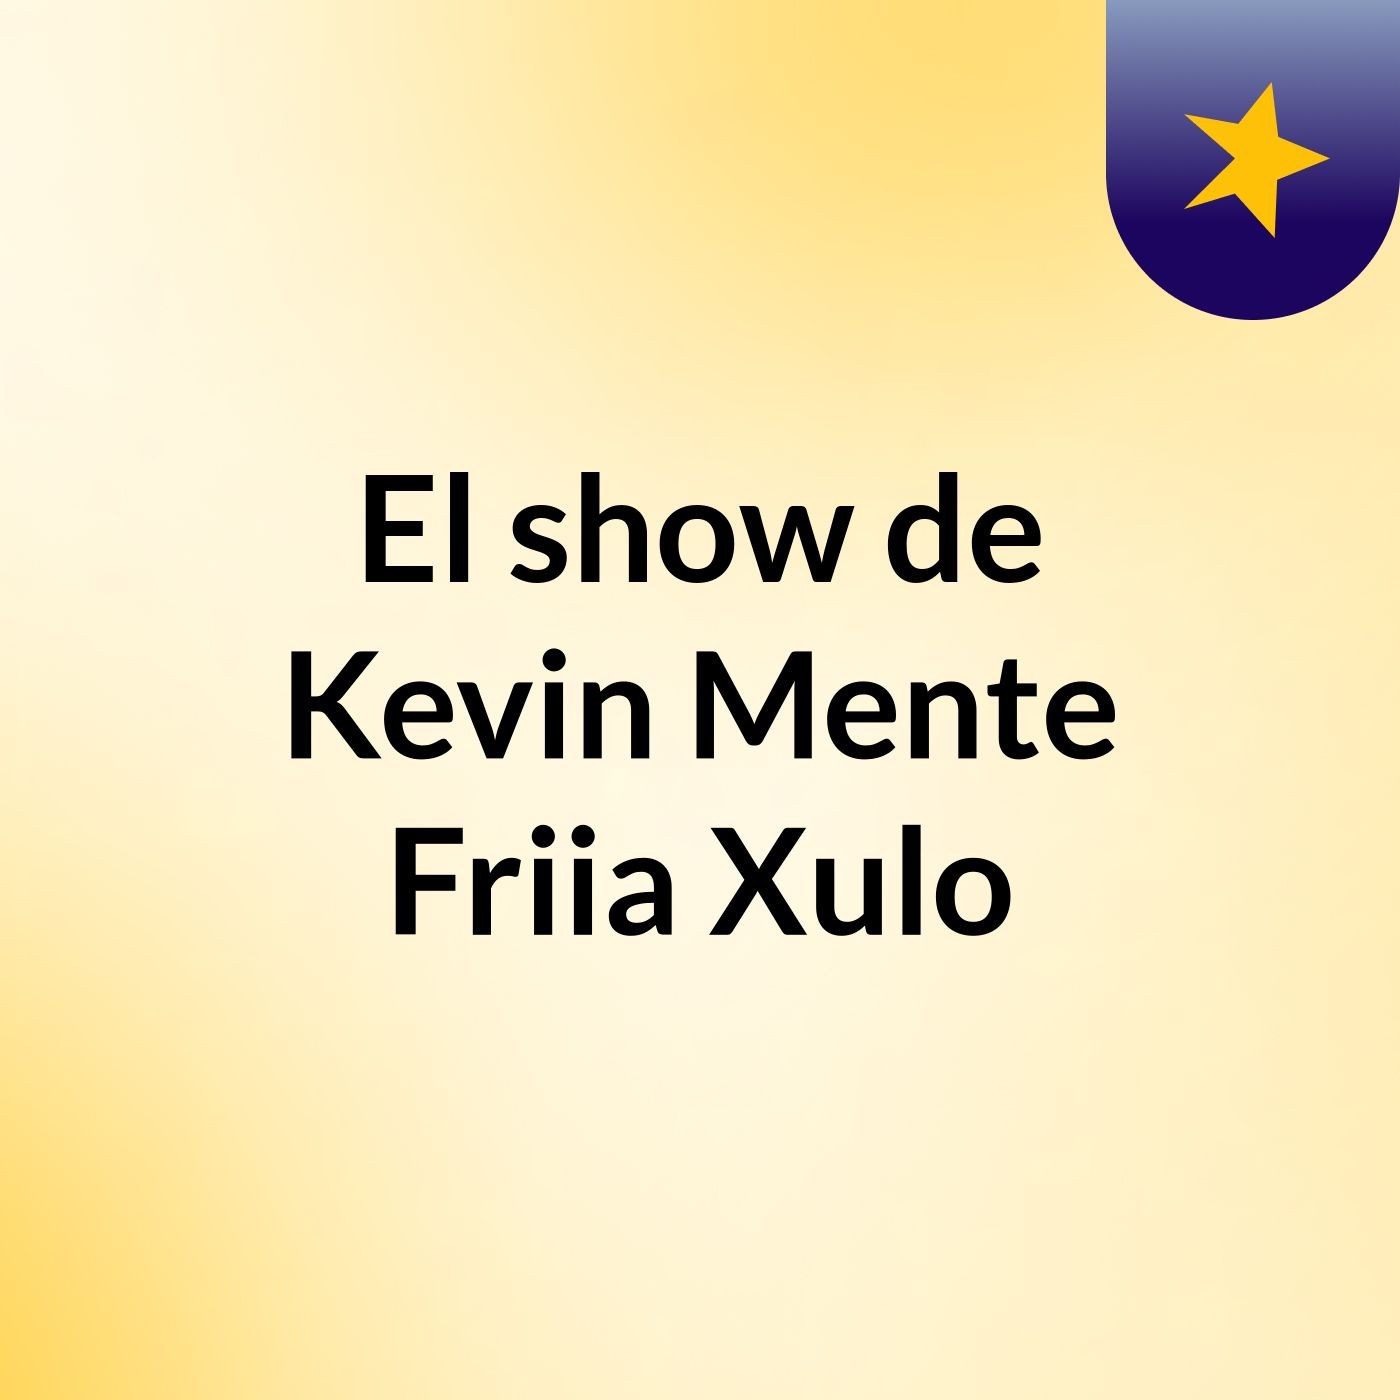 El show de Kevin Mente Friia Xulo